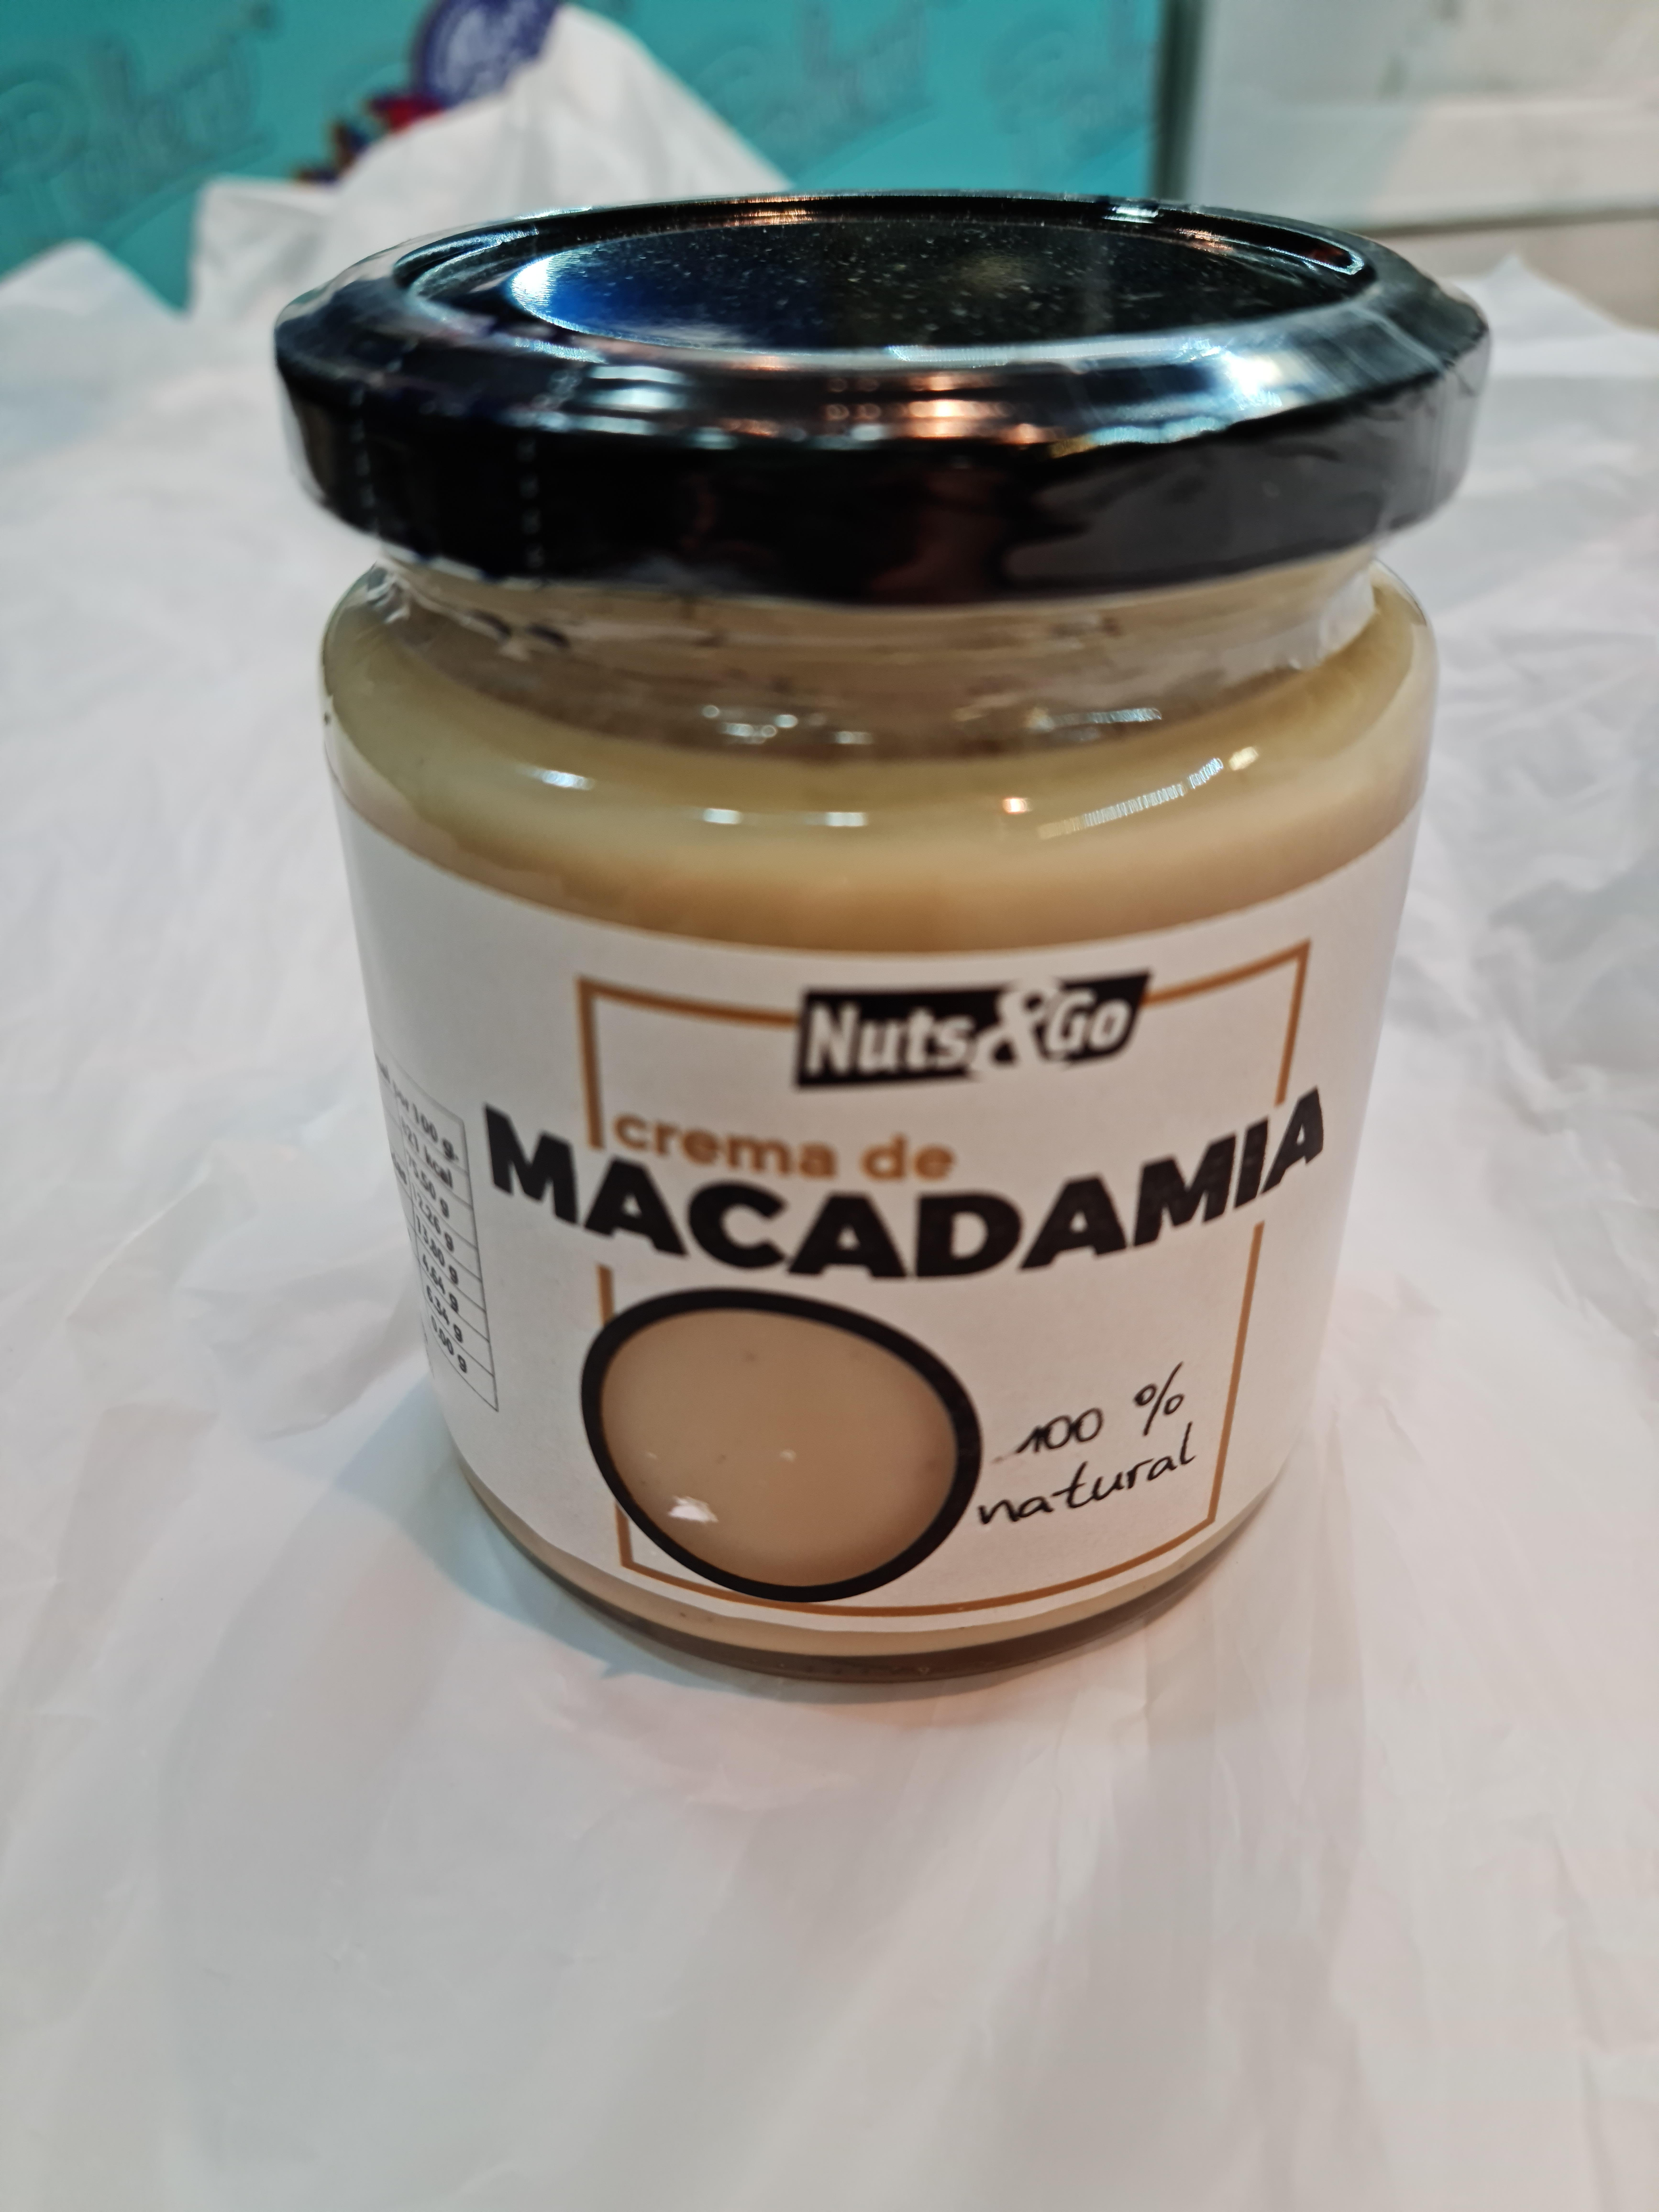 Nuts&go - Crema de macadamia 